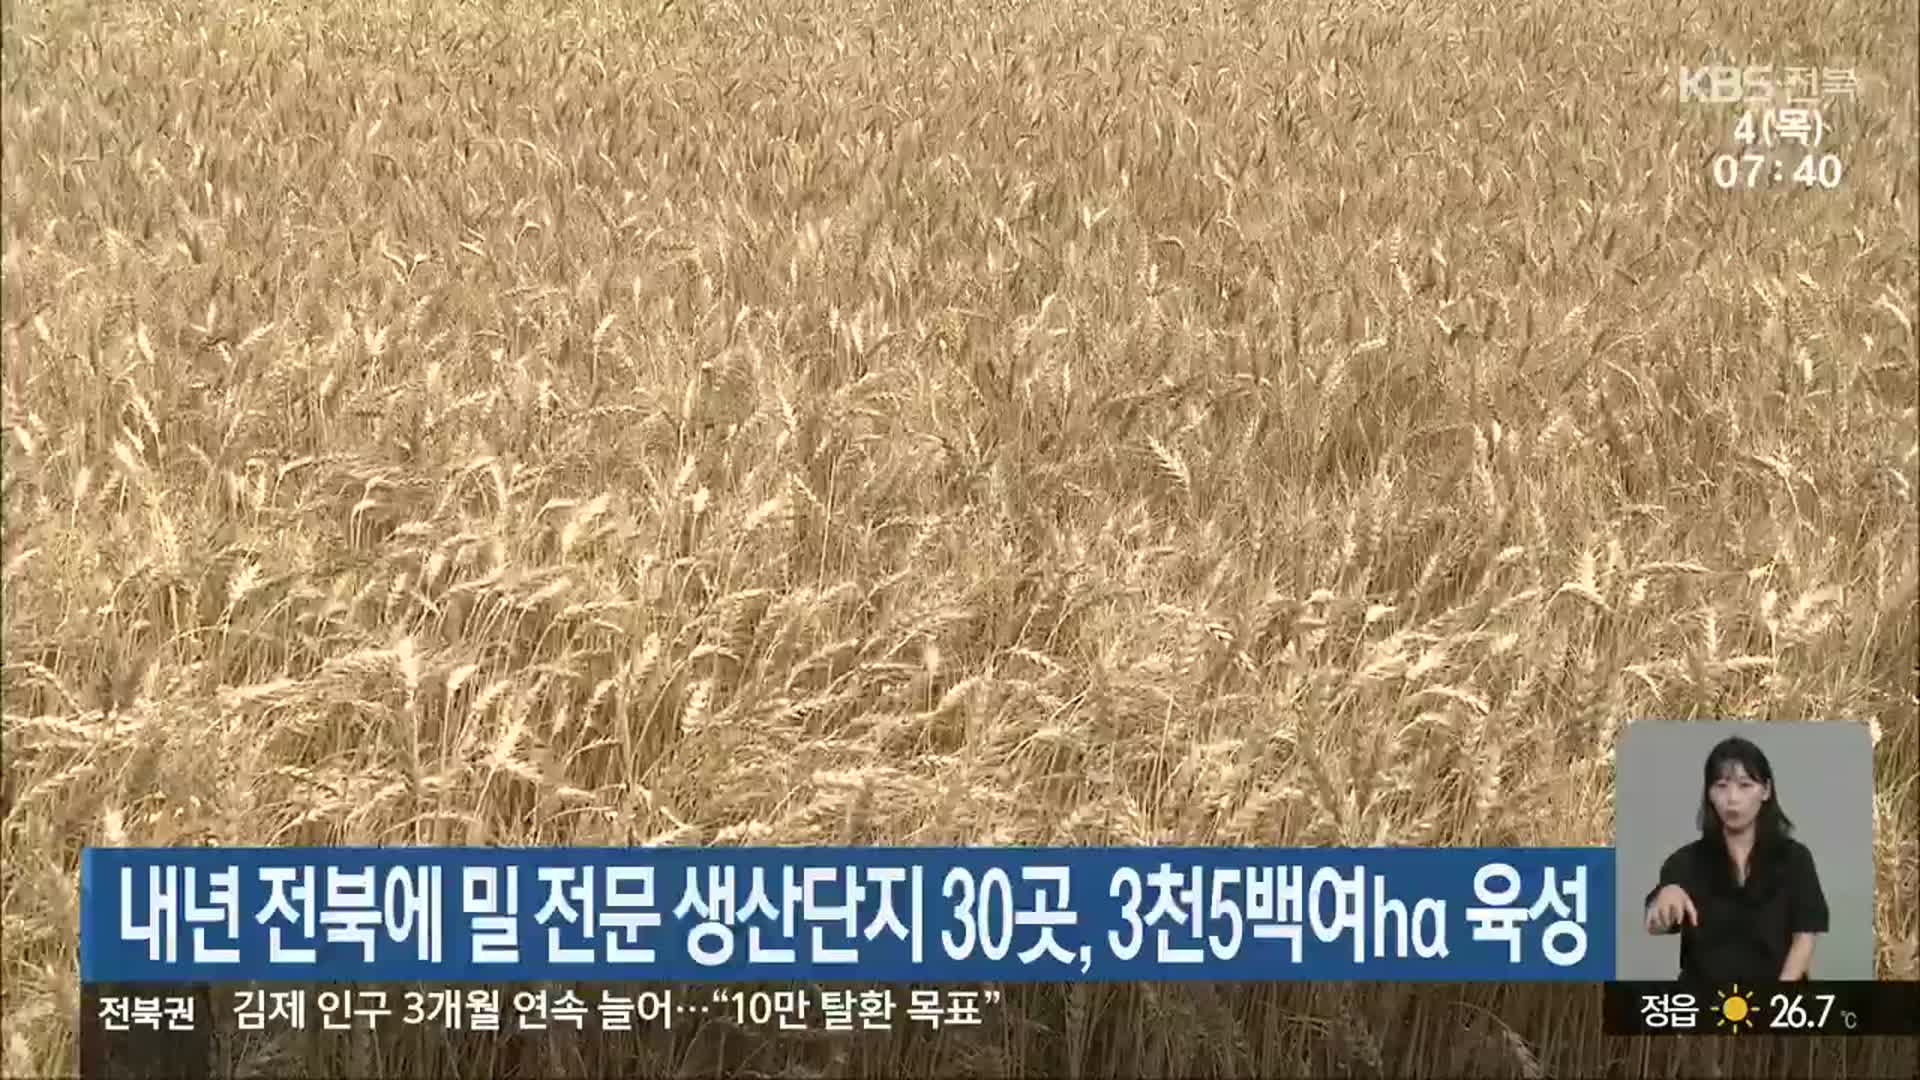 내년 전북에 밀 전문 생산단지 30곳, 3천5백여ha 육성